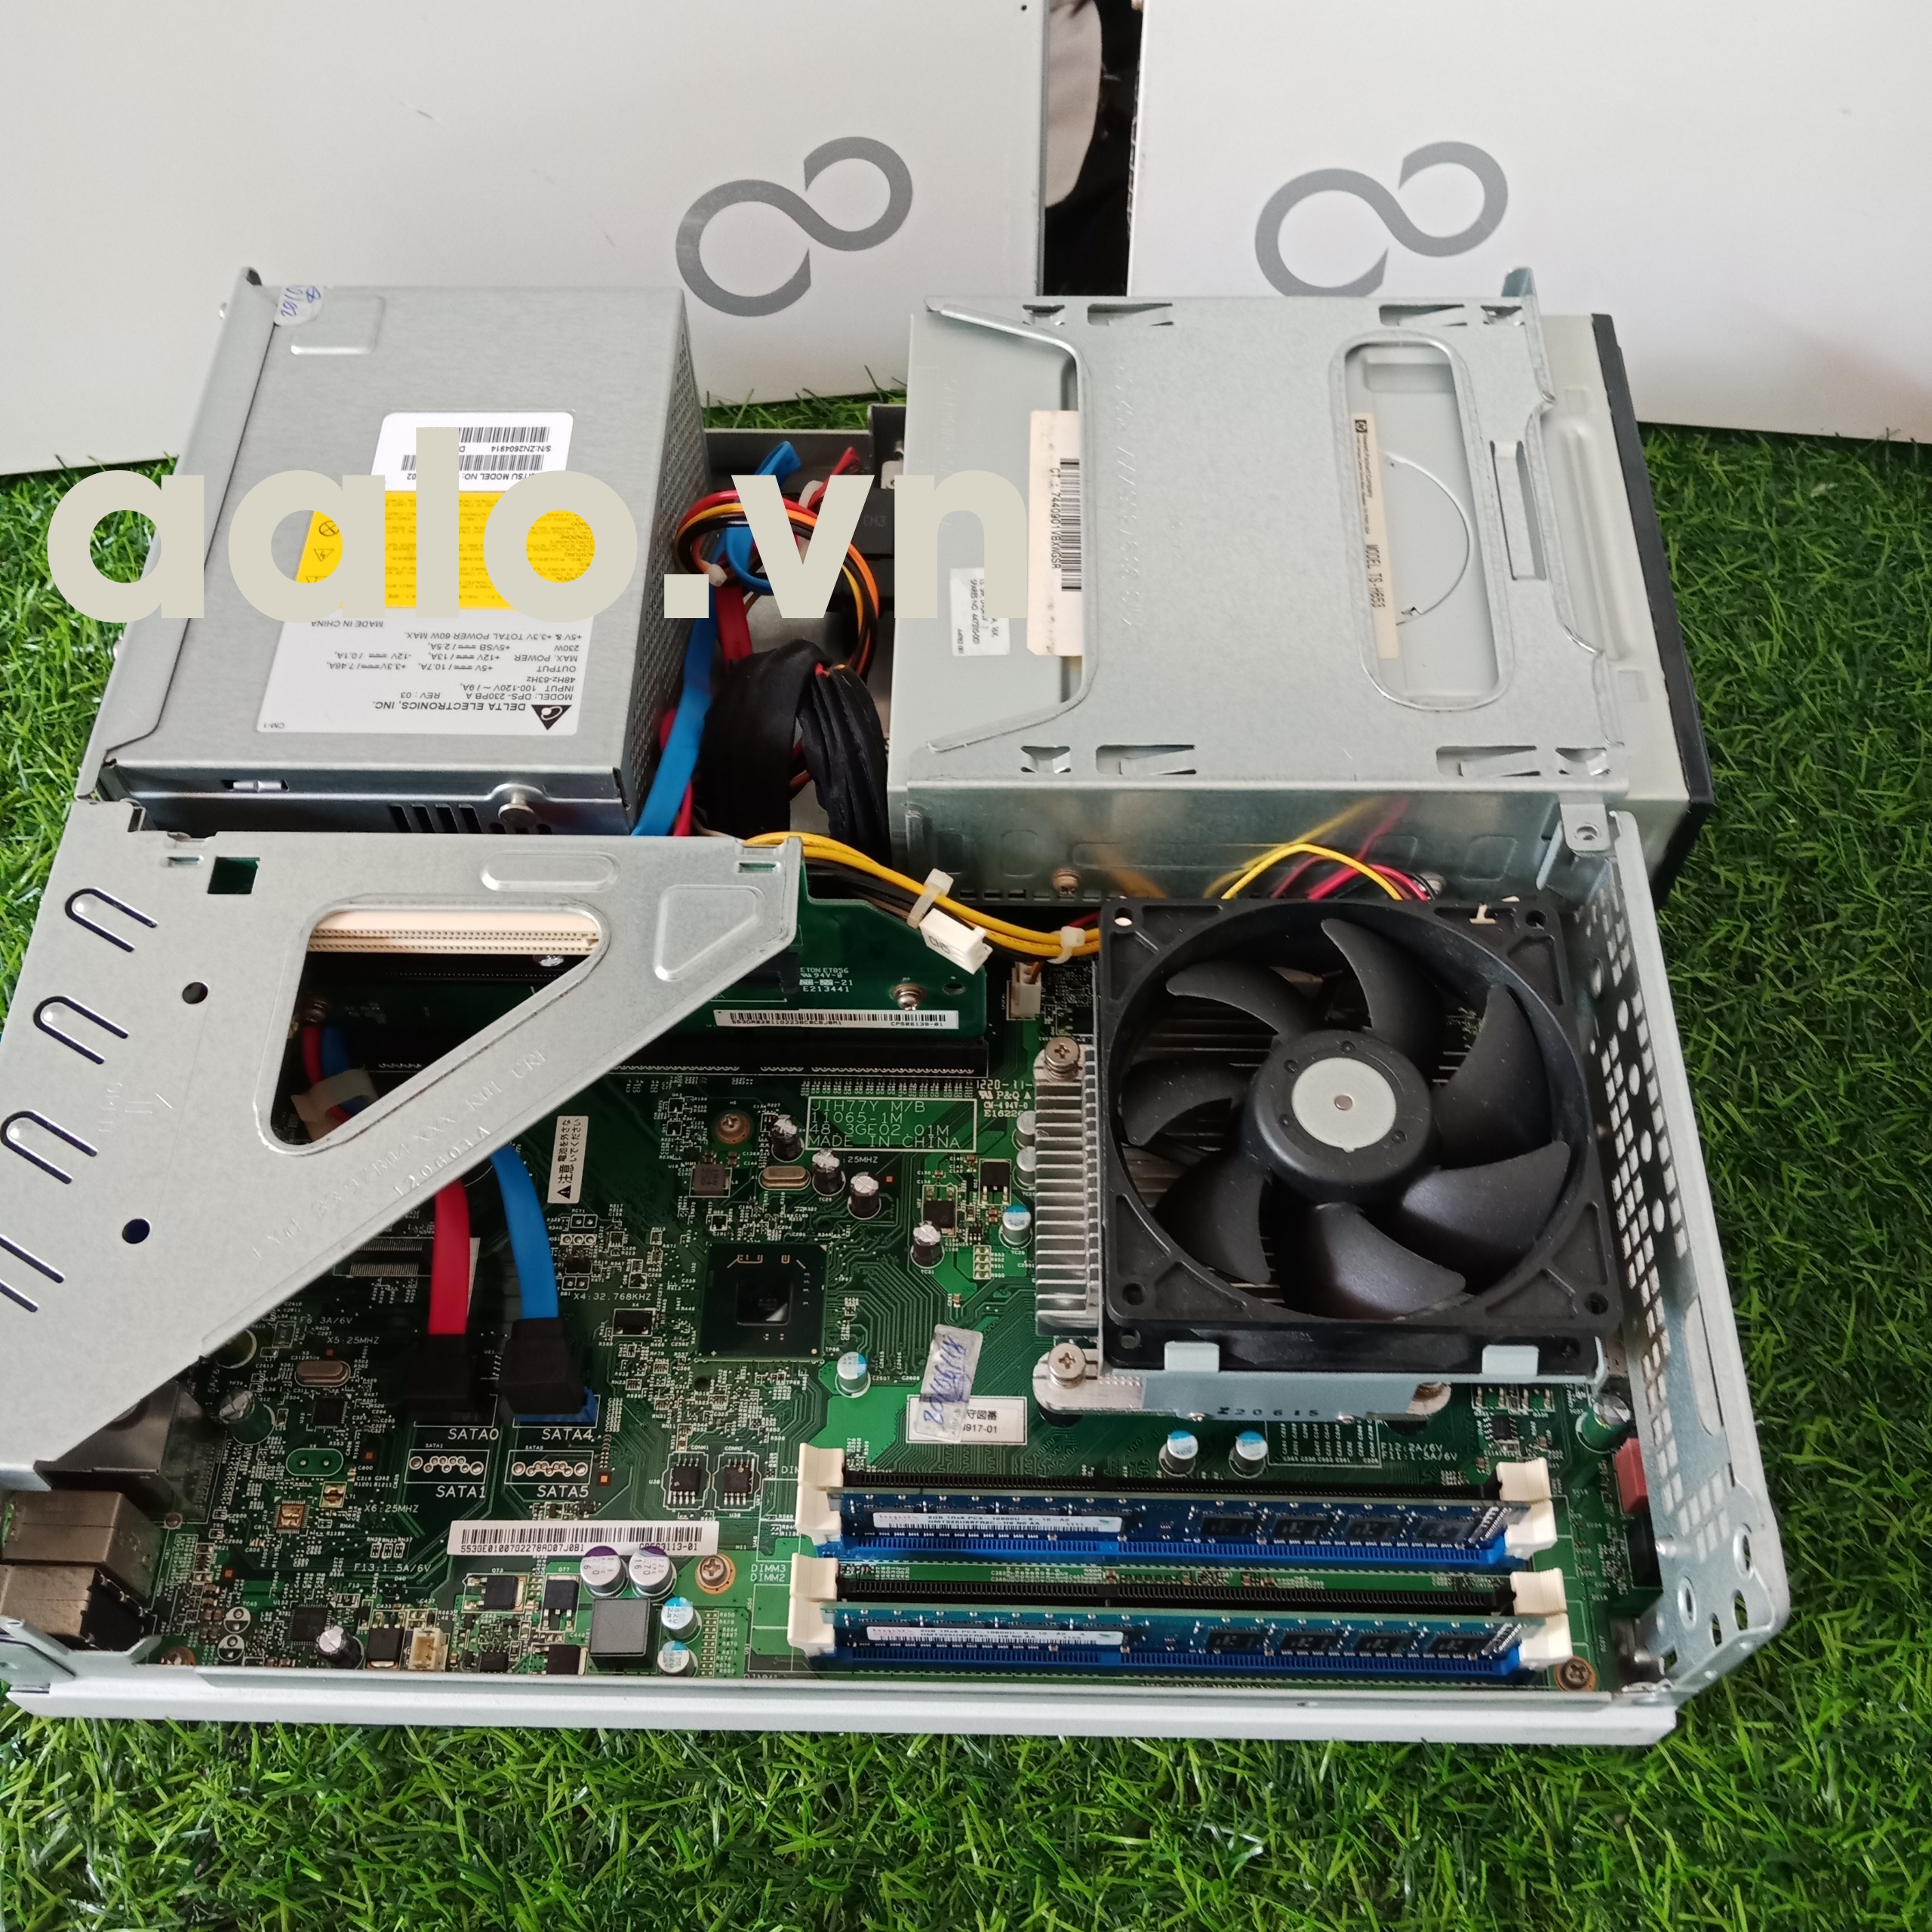 Máy tính đồng bộ Fujitsu Esprimo D582 Mainboard H77, CPU Intel i5 2400 ram DDR3 2G, ổ cứng 250G.(cũ)